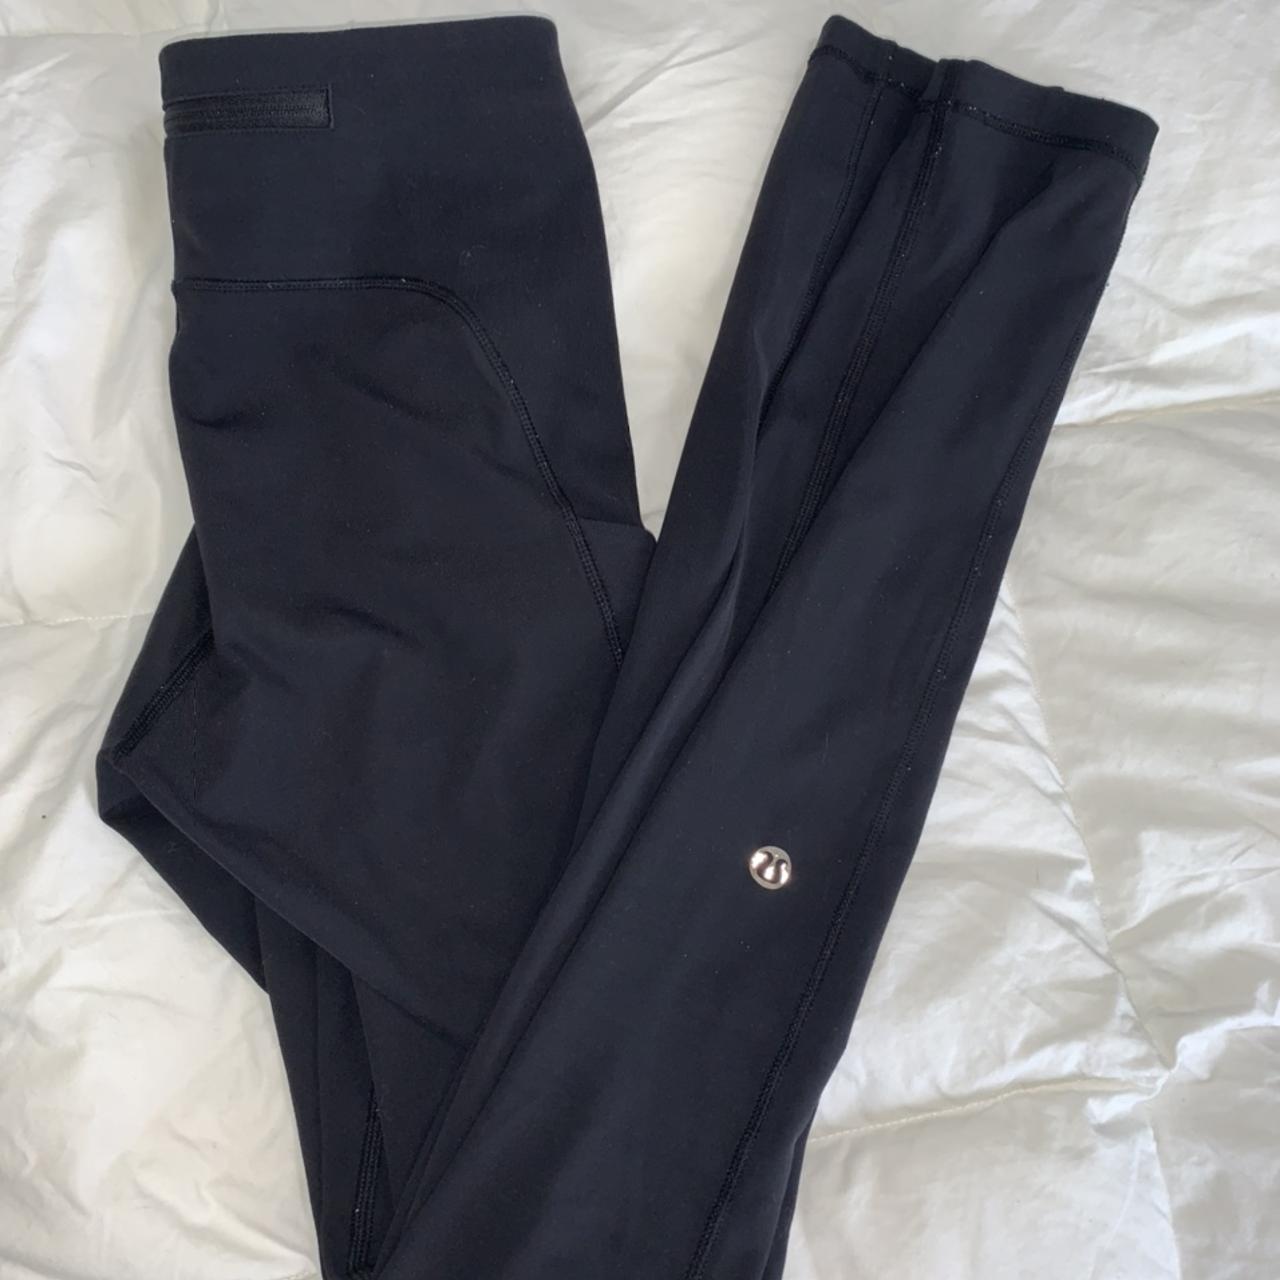 Black Lululemon Leggings with side pockets and sheer - Depop